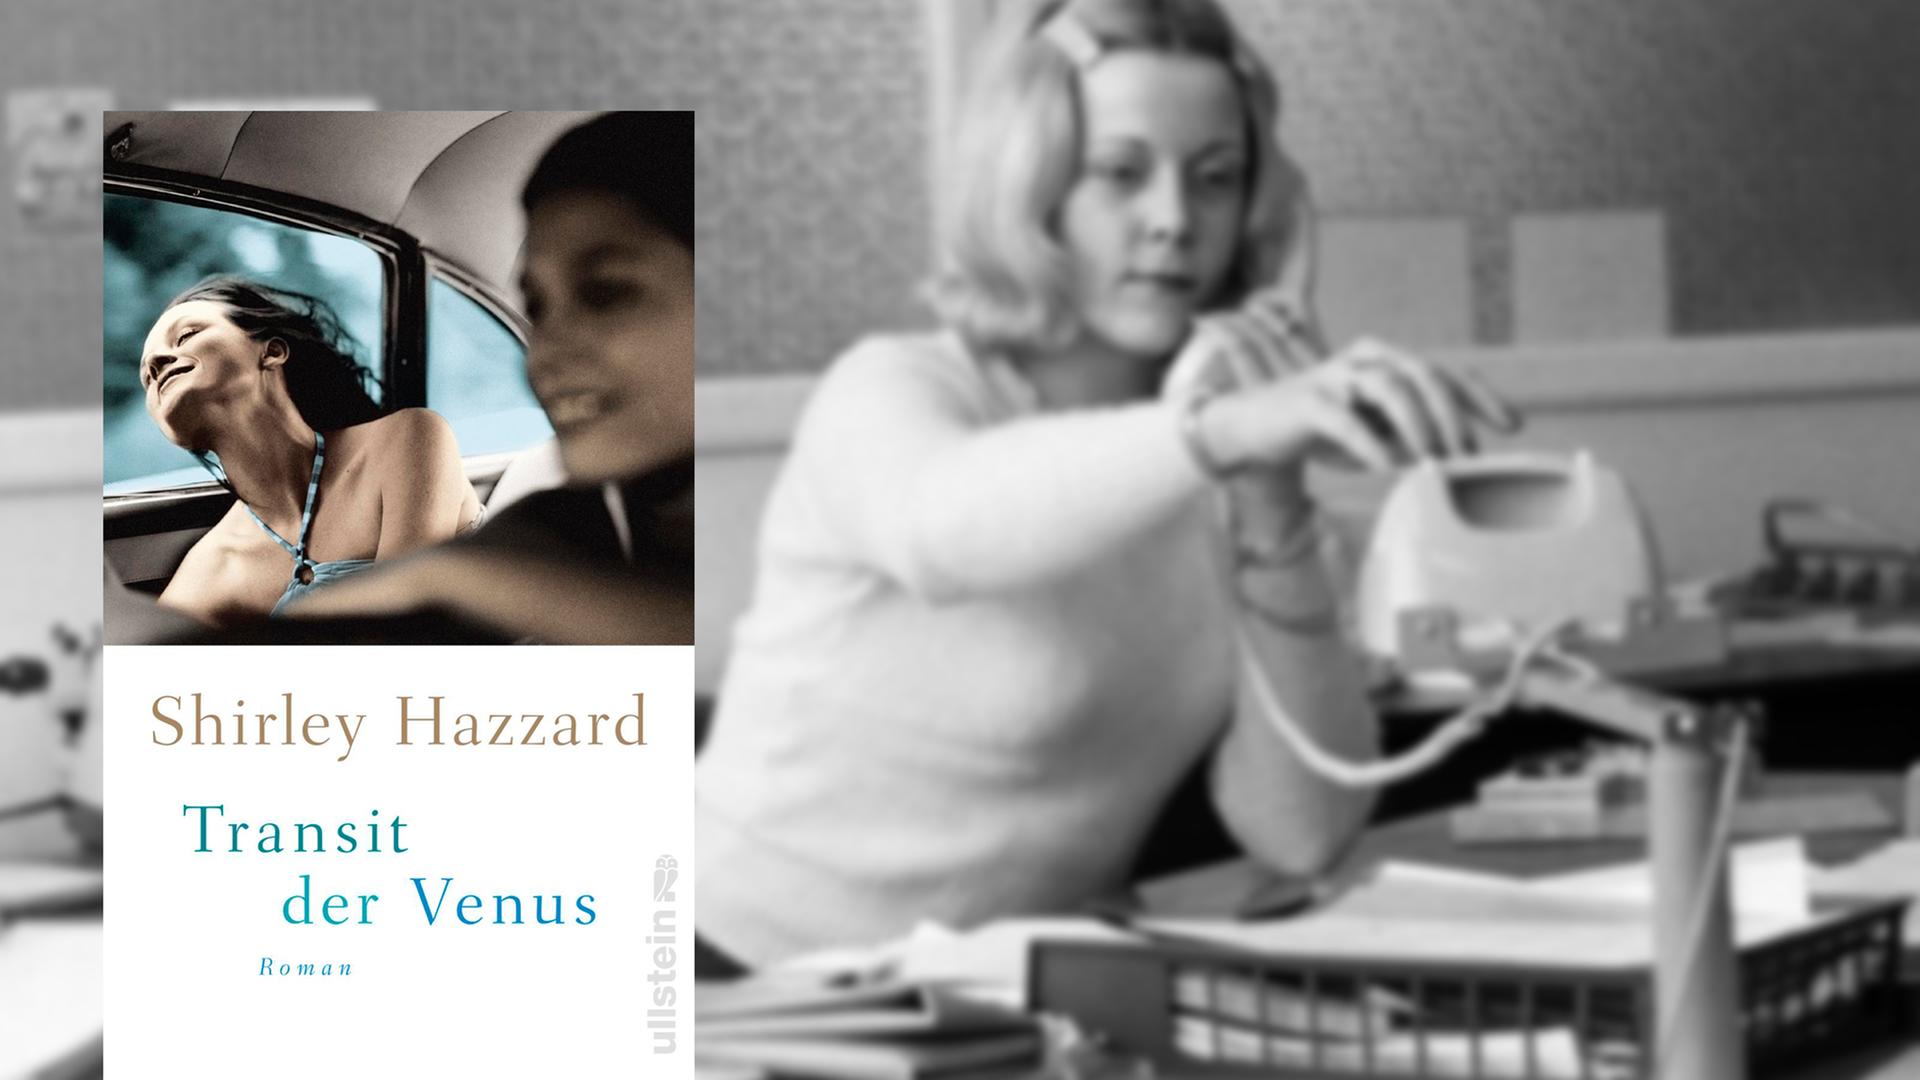 Buchcover "Transit der Venus" von Shirley Hazzard vor Hintergrundbild einer Sekretärin beim Telefonieren